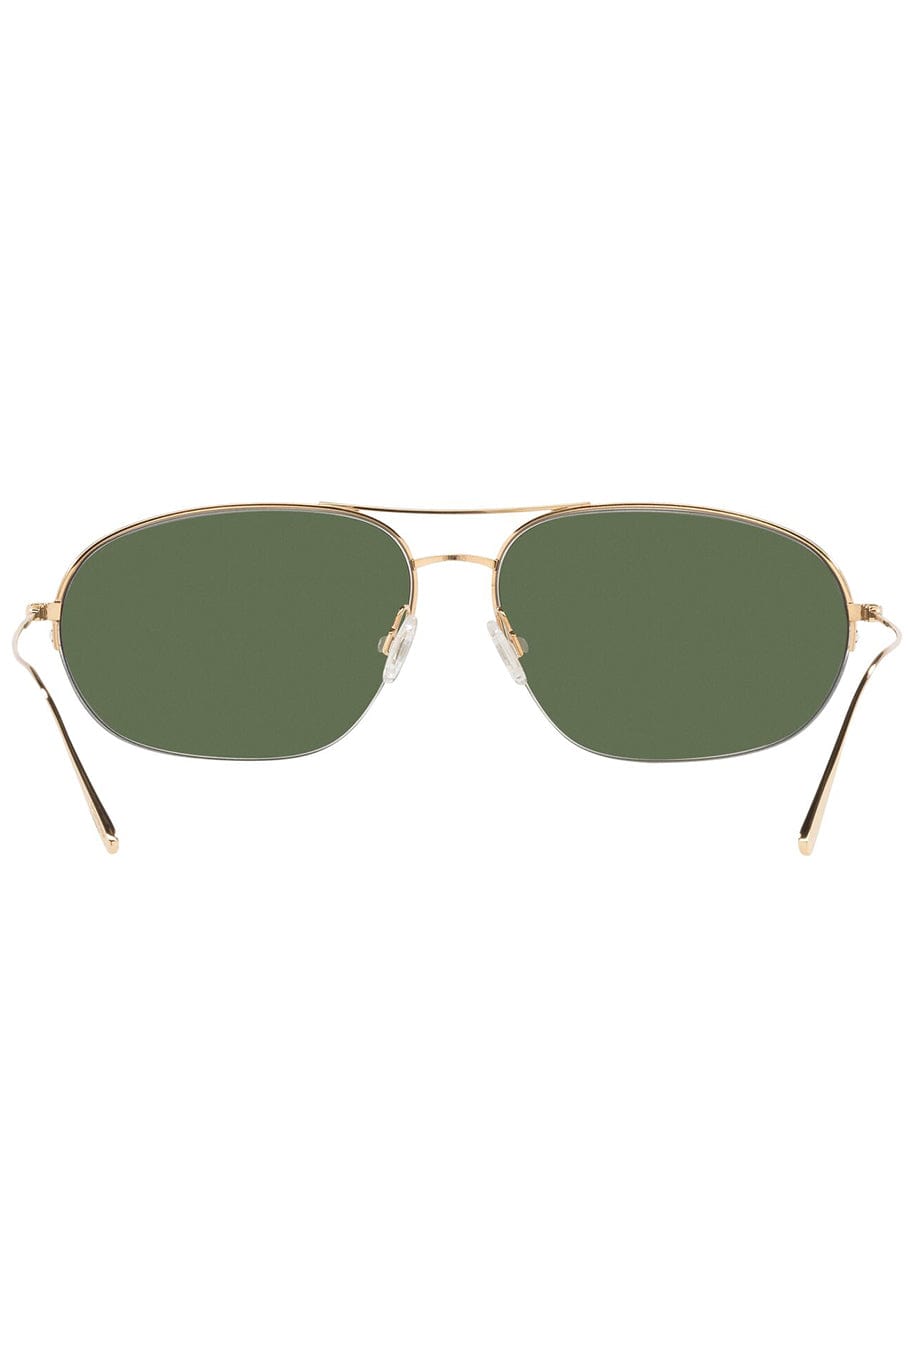 OLIVER PEOPLES-Kondor Sunglasses-GOLD GREEN